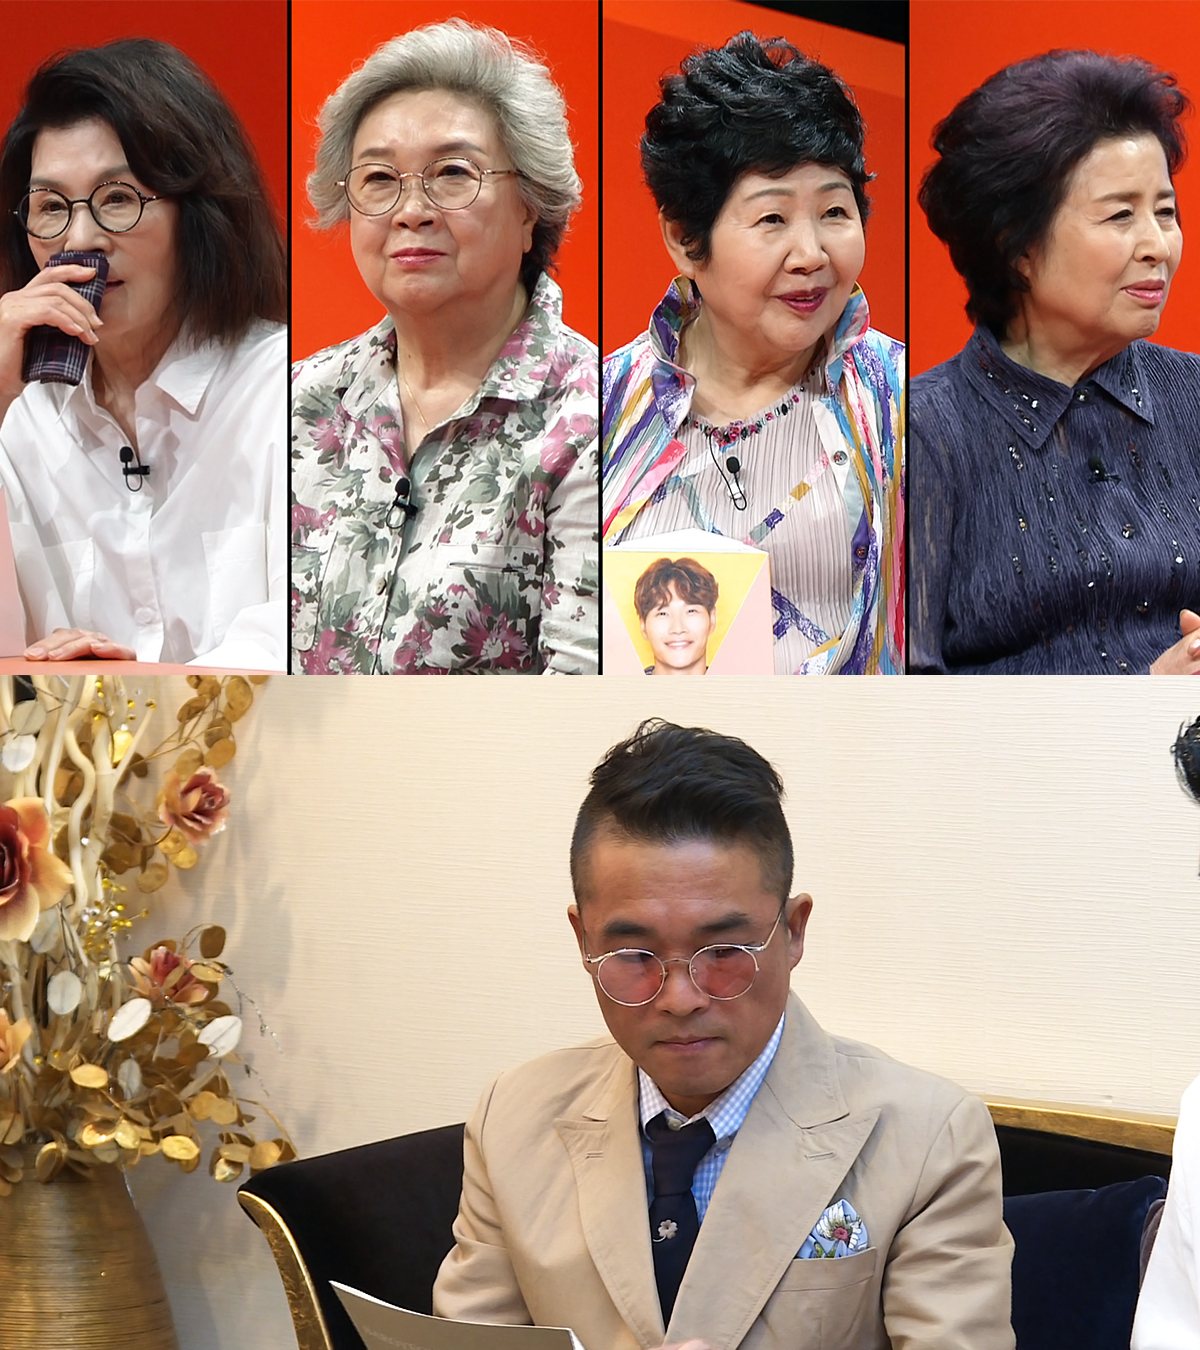 '미우새' 52세 김건모, 결혼정보회사 방문 "오디션 보는 마음" 